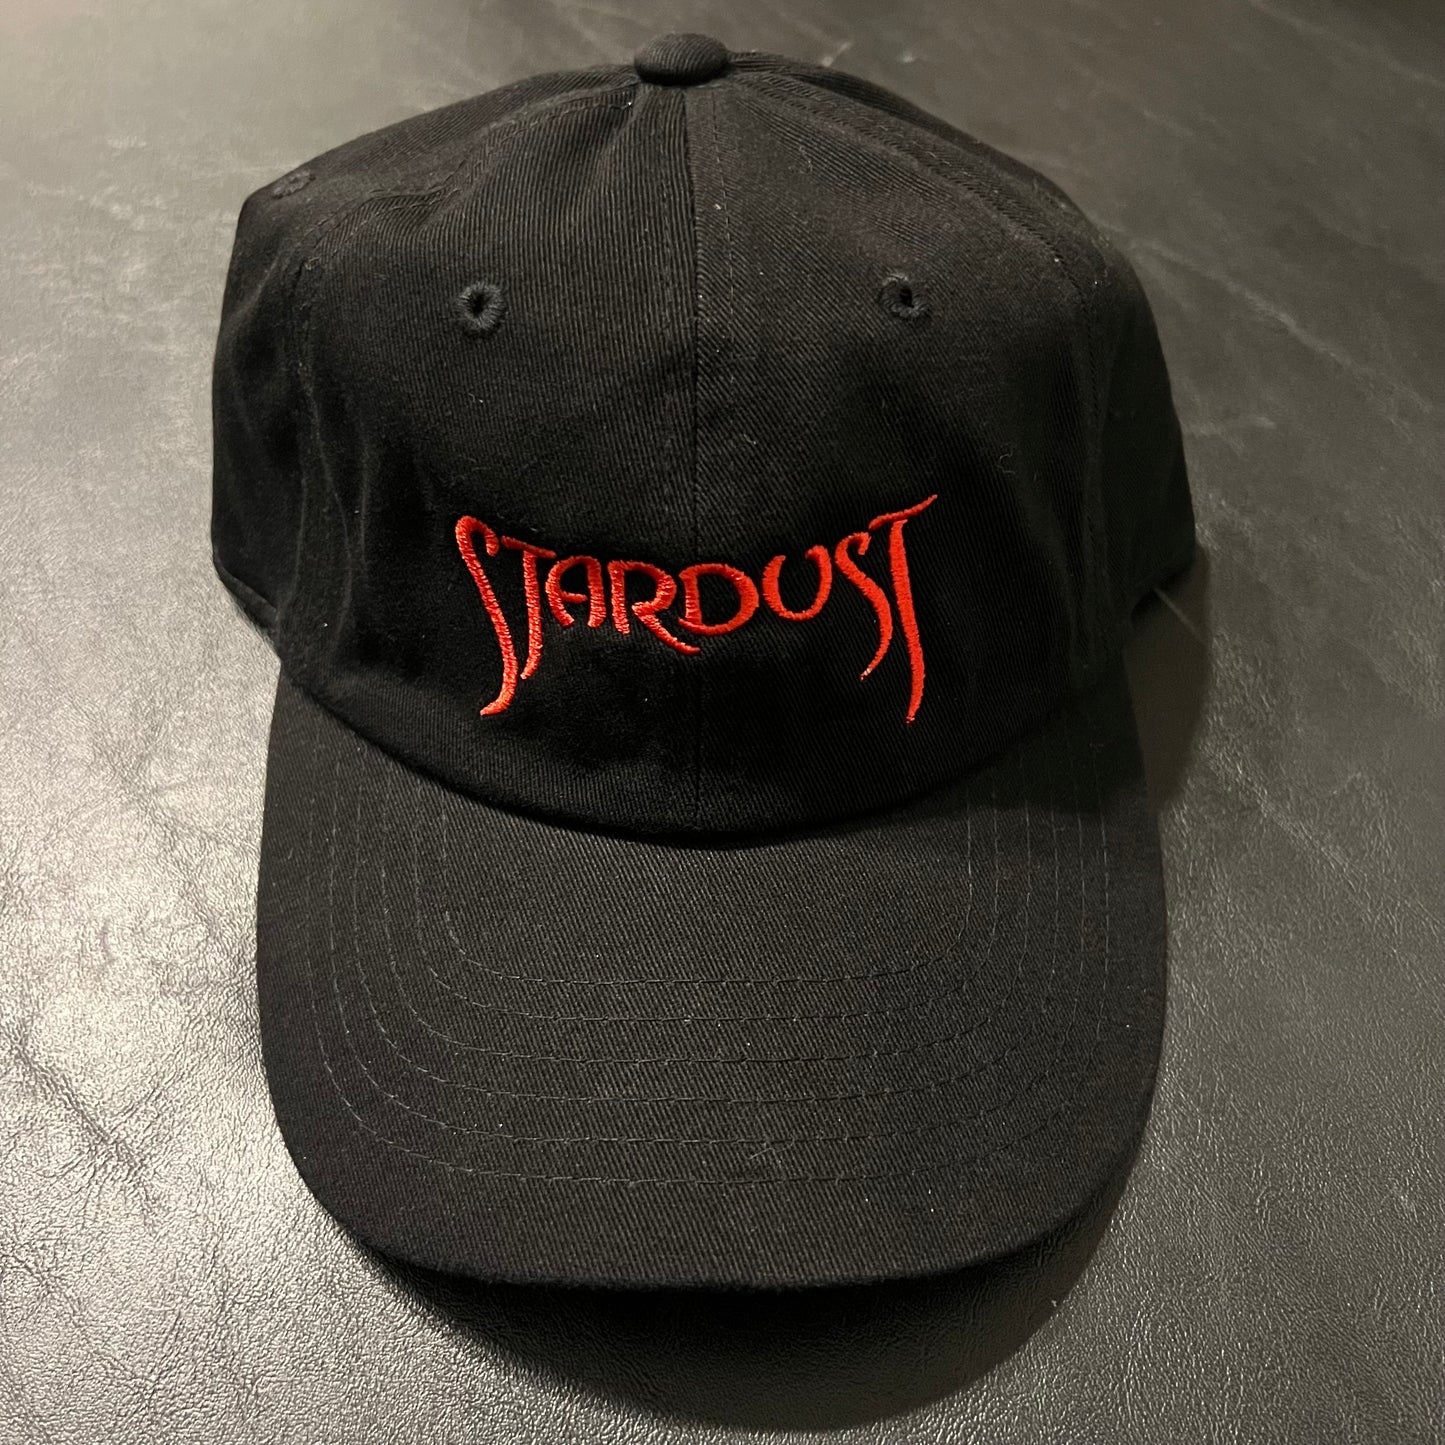 Stardust Fantasy Dad Hat 003 Black / Red